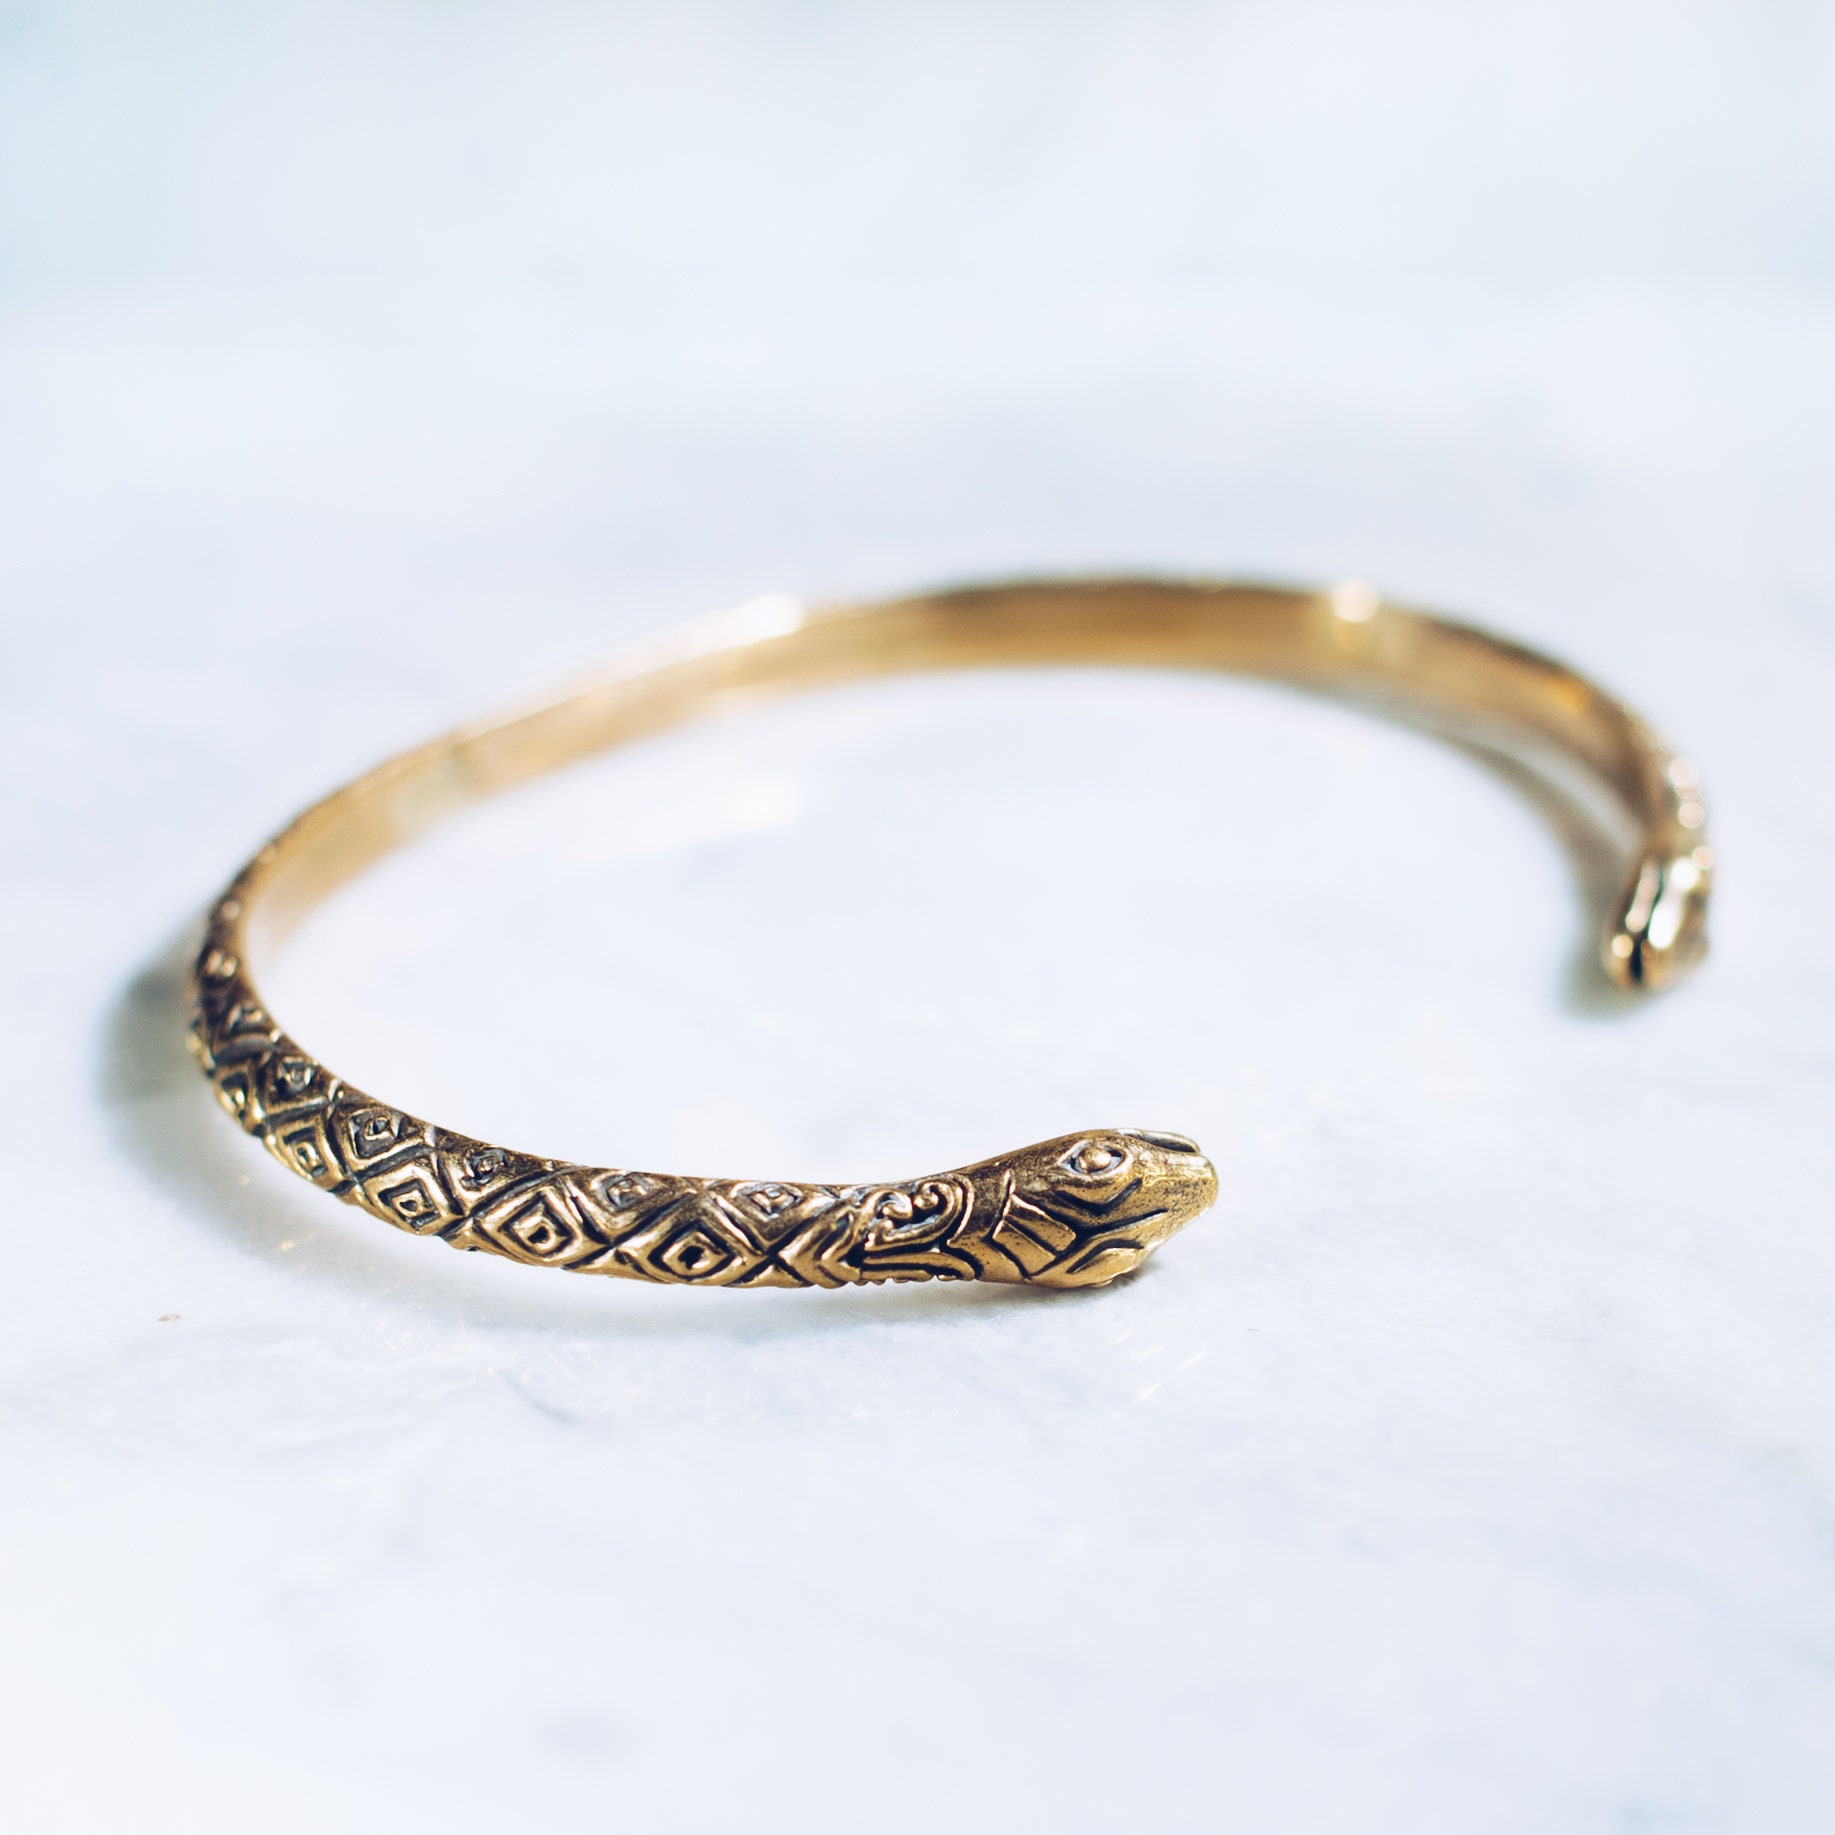 Gold Snake Adjustable Bracelet - Gold Bracelet For Girls by Niscka